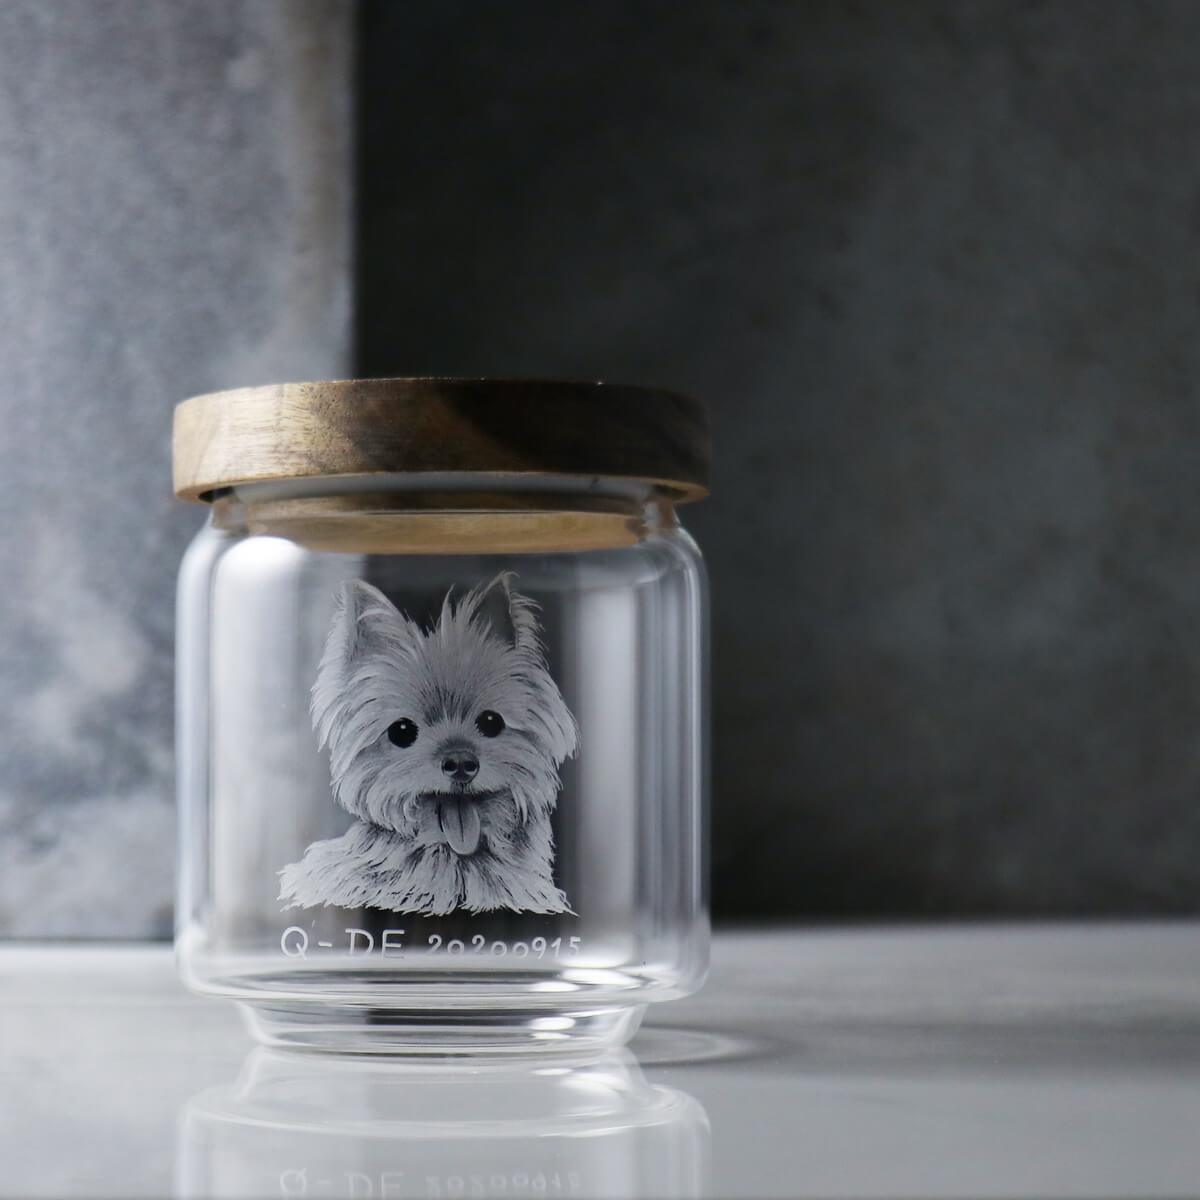 10cm【寵物骨灰罐】適合鼠兔小型毛小孩在天堂明亮純淨的家 畫像訂做 - MSA玻璃雕刻